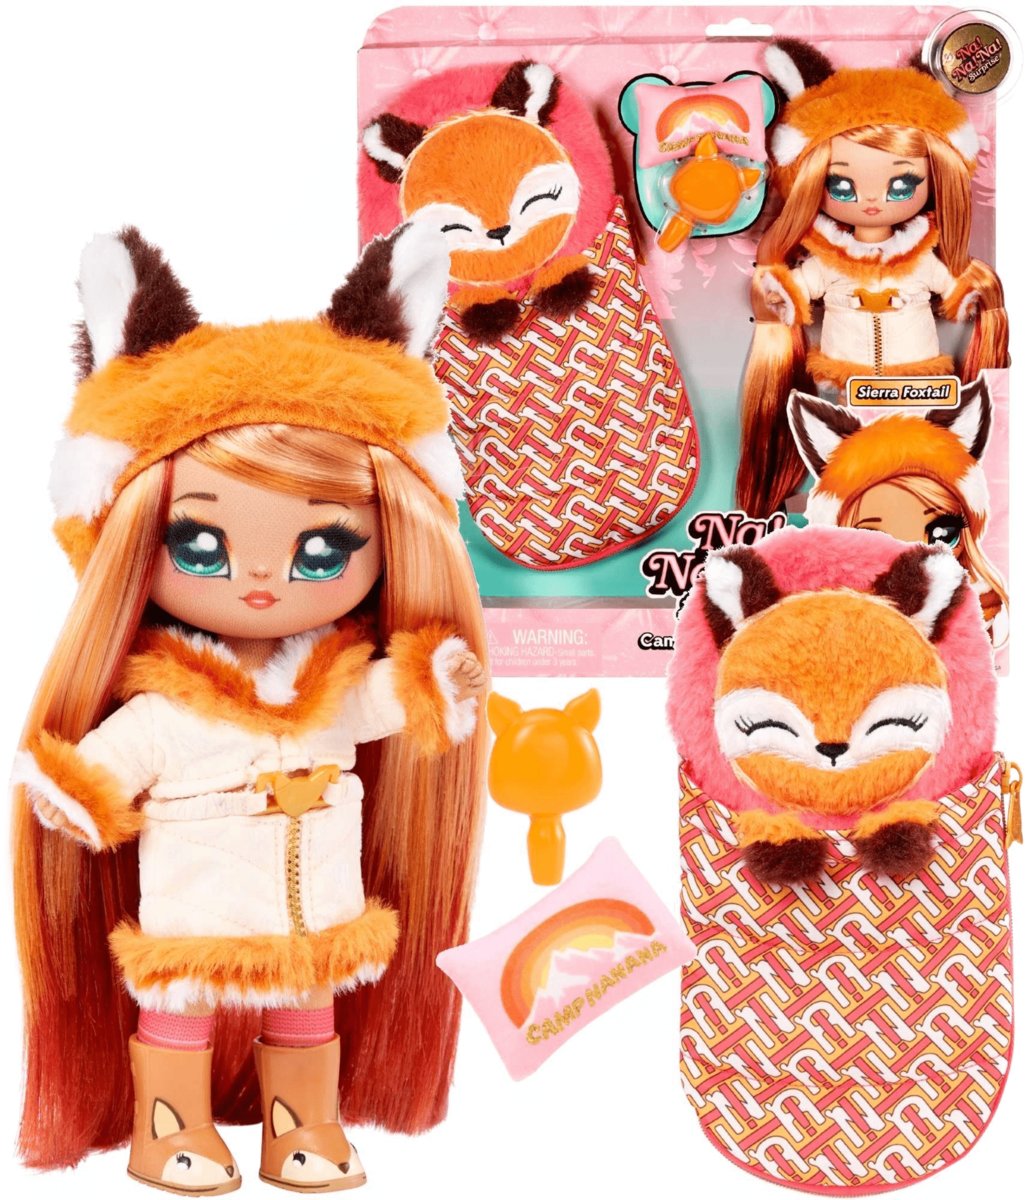 Na Na Na Surprise Na Na Na Surprise Seria Kempingowa - SIERRA FOXTAIL - Miękka pluszowa lalka inspirowana lisem z pomarańczowymi włosami i śpiworem - Strój, poduszka i szczotka - Kolekcjonerska - Dla dzieci w wieku 5+ 579397C3